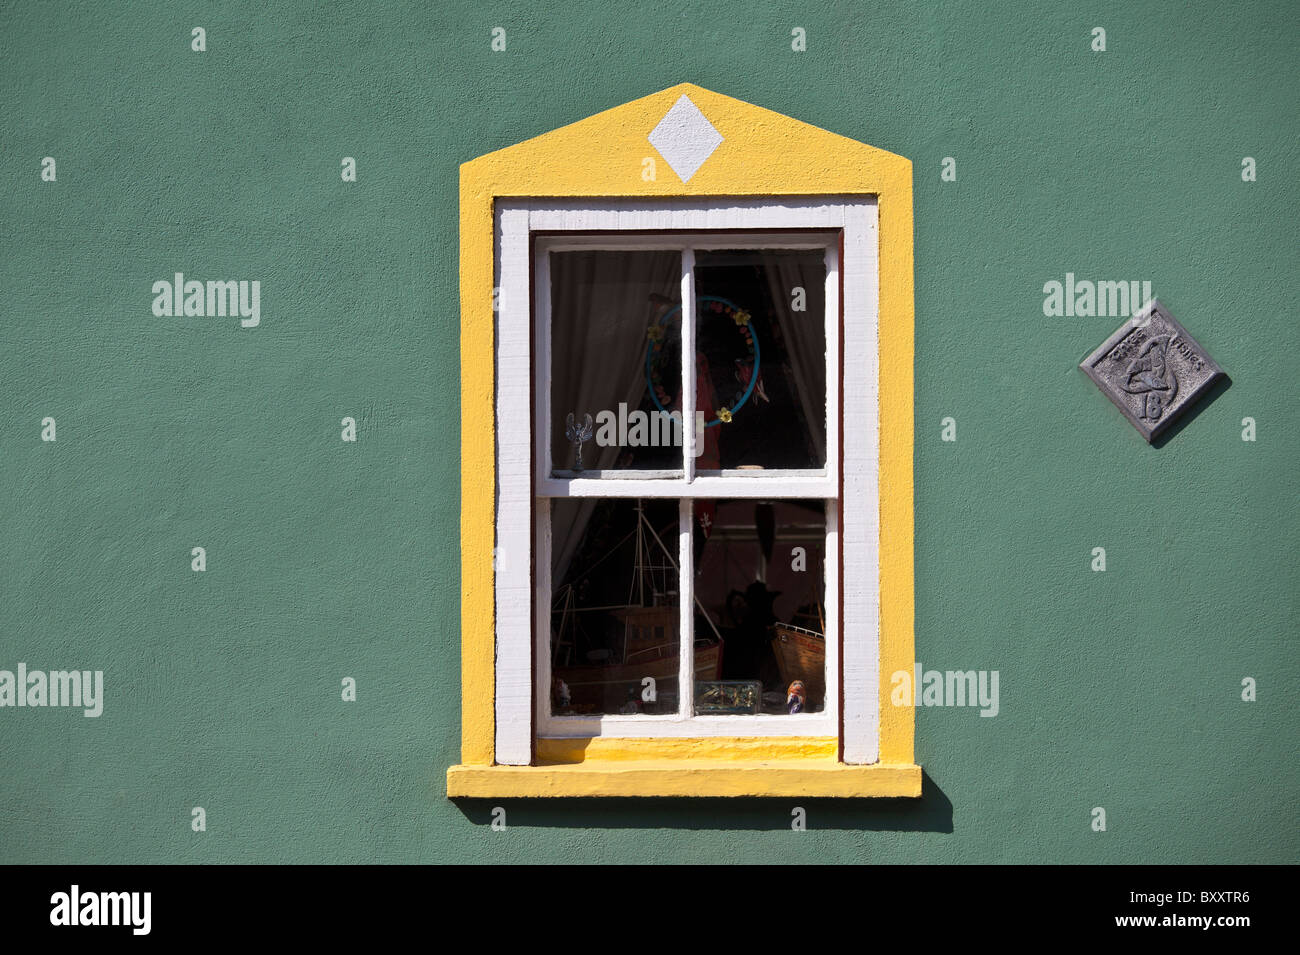 Mur de couleur aigue-marine et jaune en bordure de la fenêtre de Kinsale, dans le comté de Cork, Irlande Banque D'Images